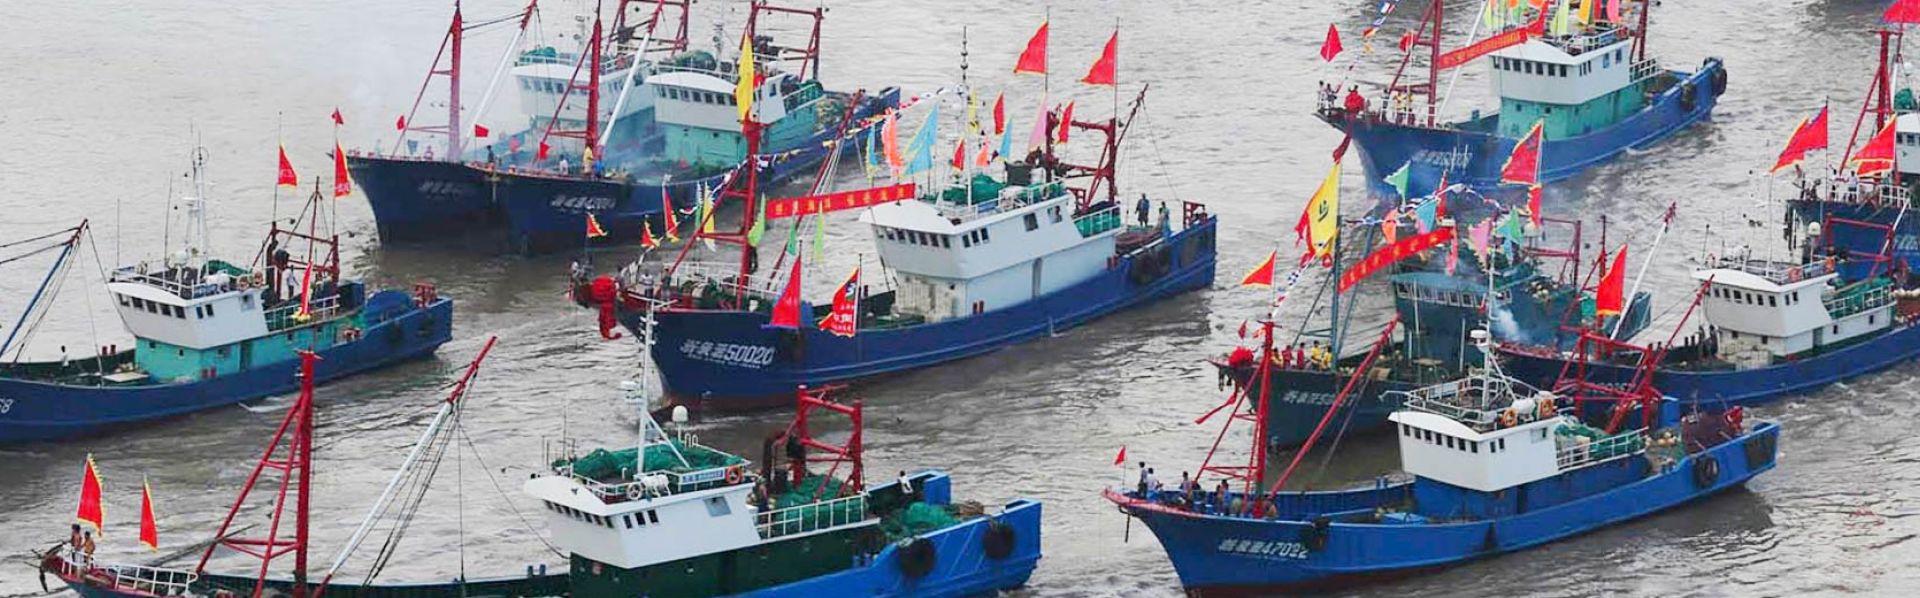 La flotte de pêche chinoise a fortement augmenté pour assouvir l'appétit grandissant pour les fruits de mer de la population de Chine populaire et les besoins de ses marché d'exportation. Le poisson est le motif principal des disputes en mer de Chine du Sud. (Source : Stratfor)